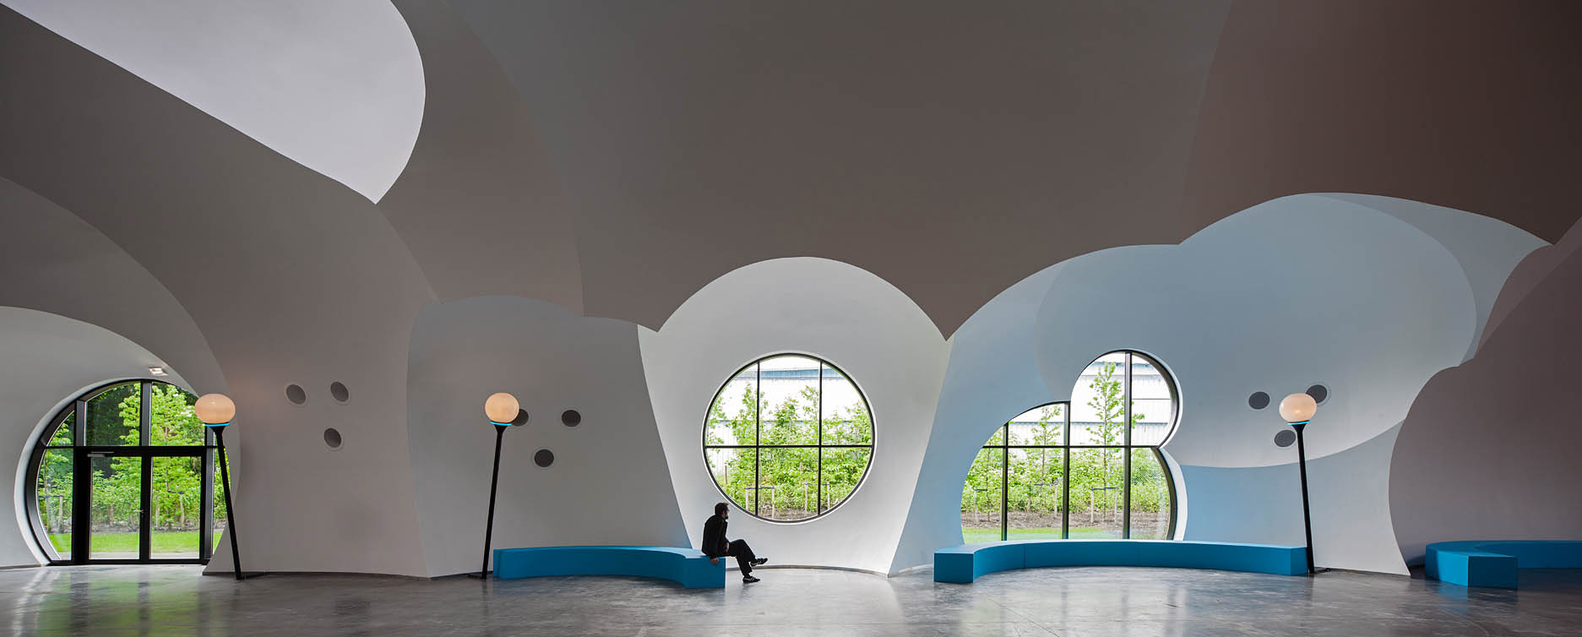 可持续建筑:该设计利用气泡来创造窗户和天窗。照片:carlosarroyo.net